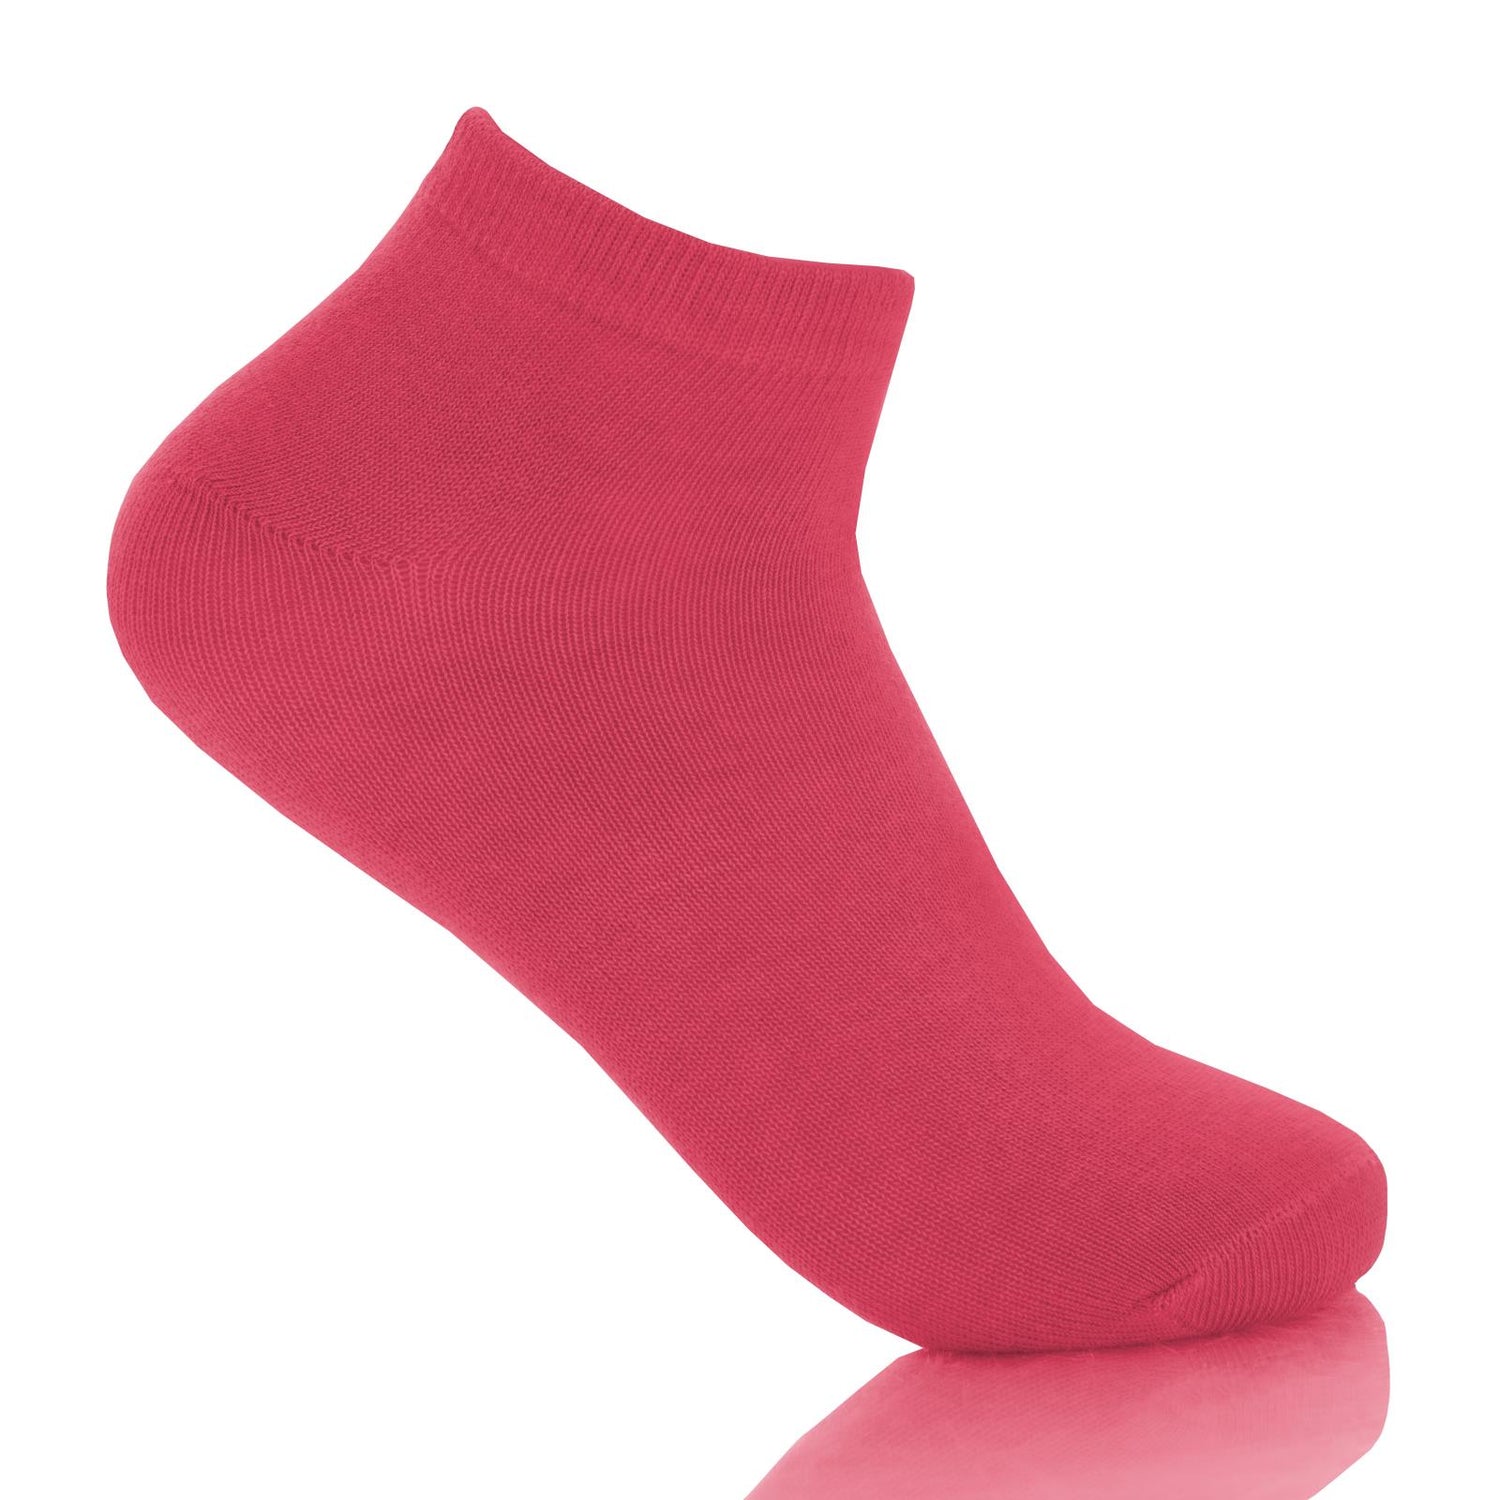 Women's Solid Ankle Socks in Taffy